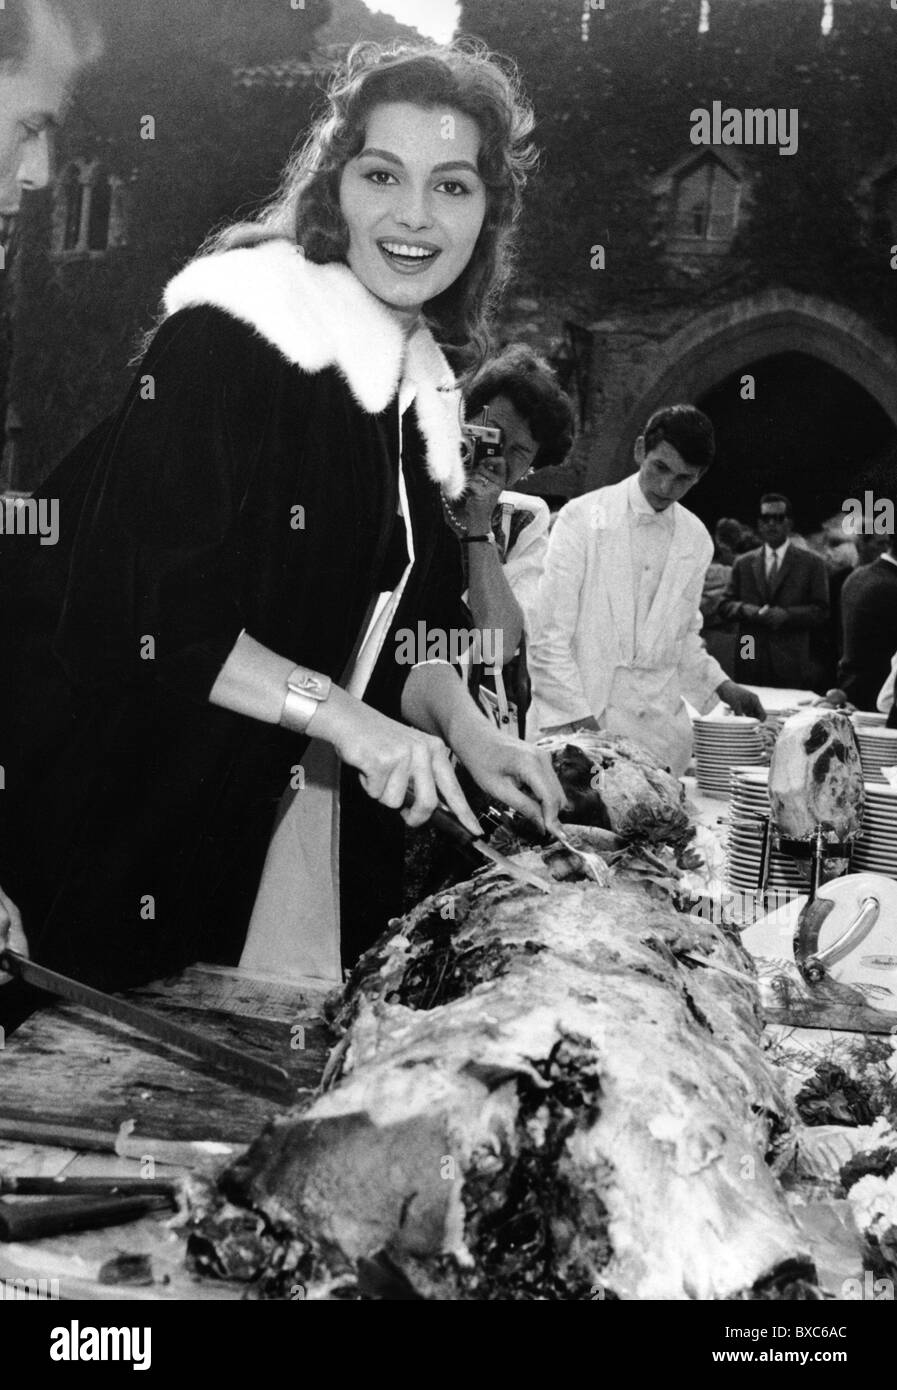 Schiaffino, Rosanna, 25.11.1939 - 17.10.2009, Italian actress, half length, carving a suckling pig, circa 1960s, Stock Photo